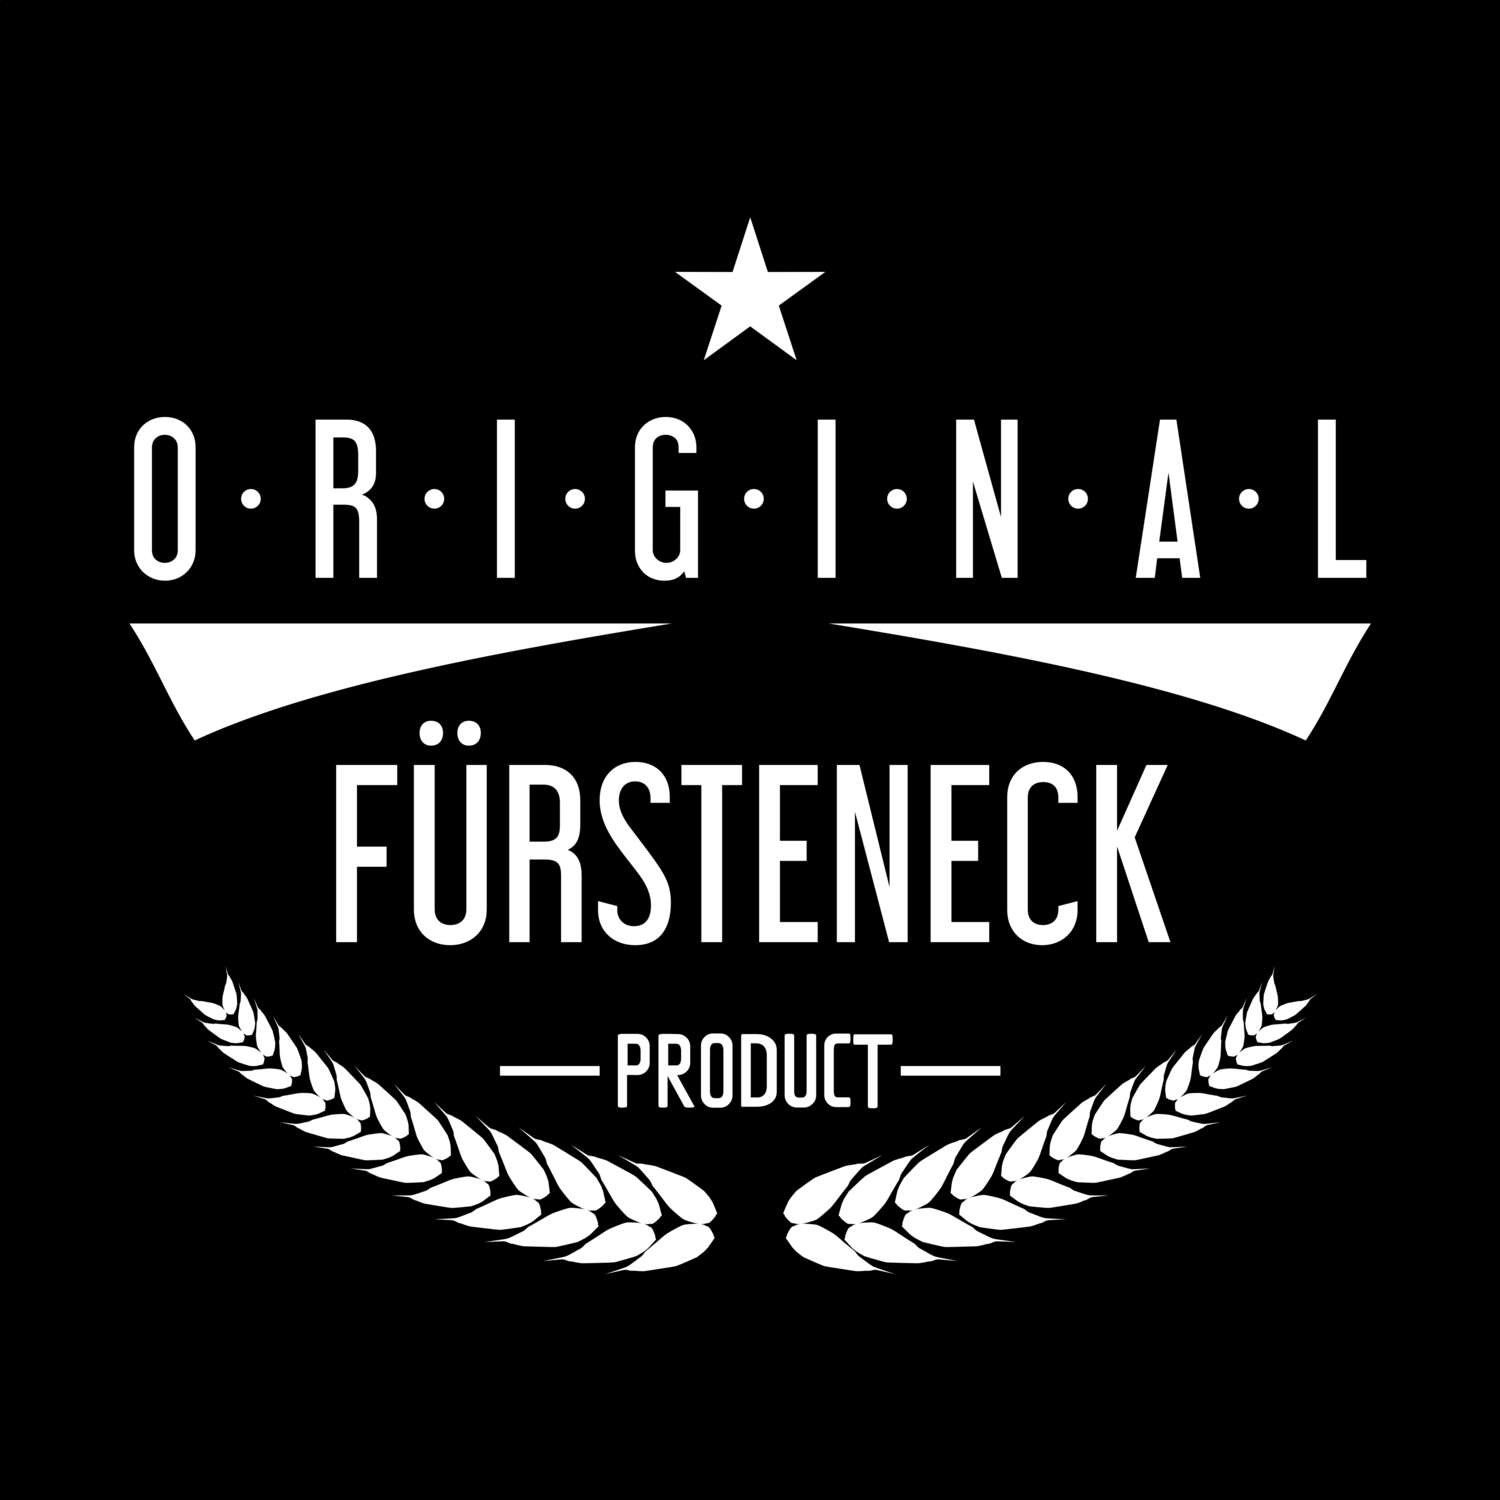 Fürsteneck T-Shirt »Original Product«